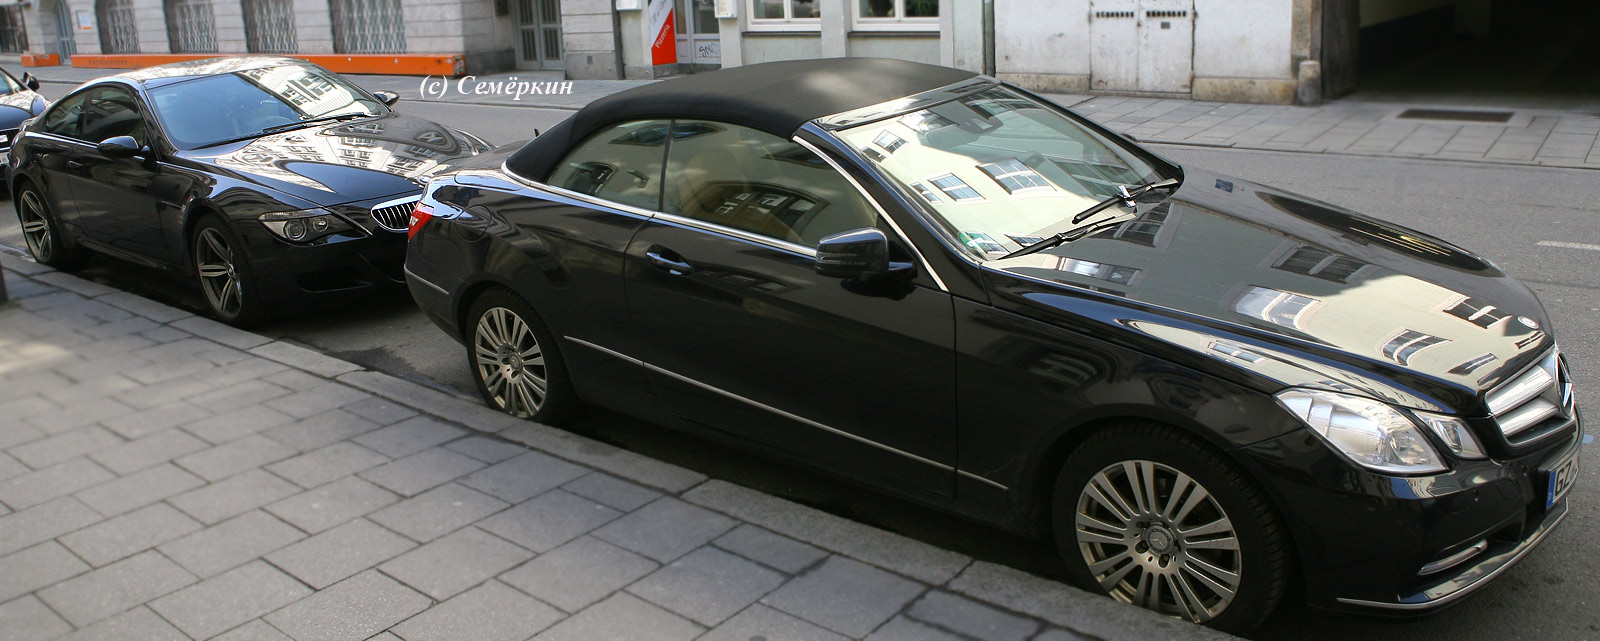 Мюнхен BMW и Mercedes